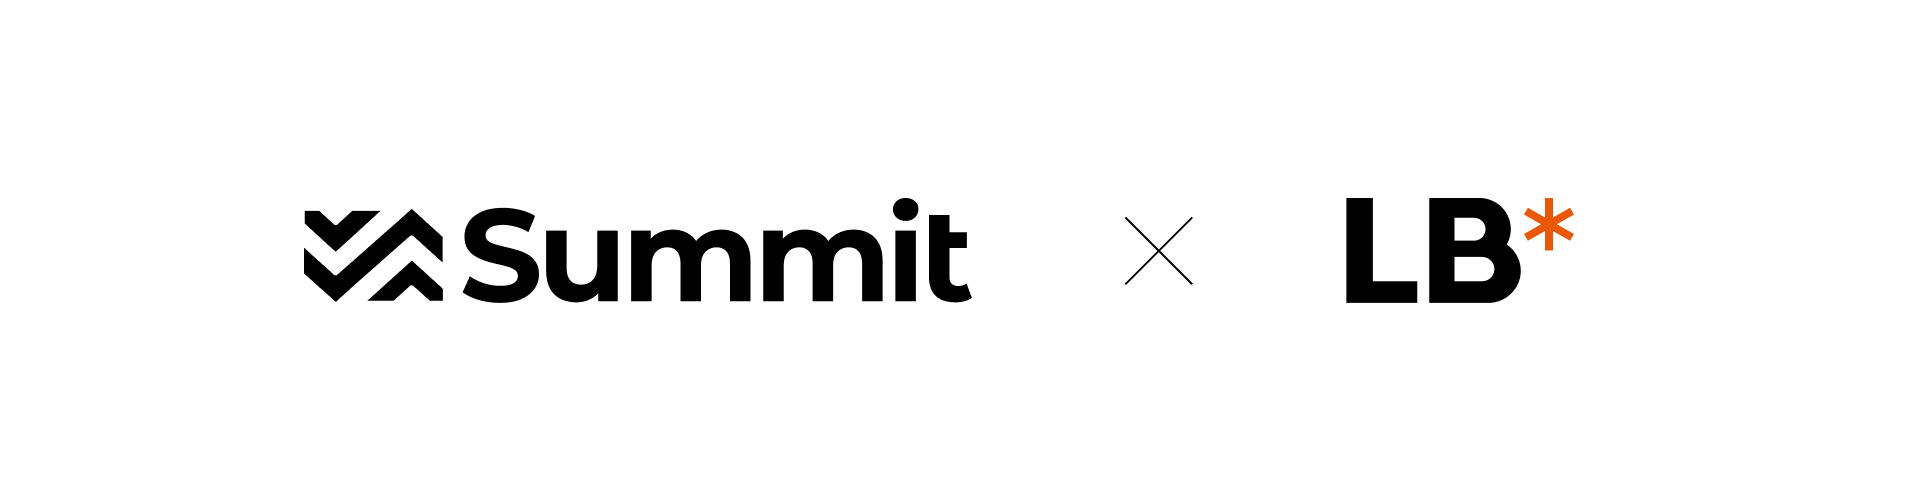 summit-slide-35